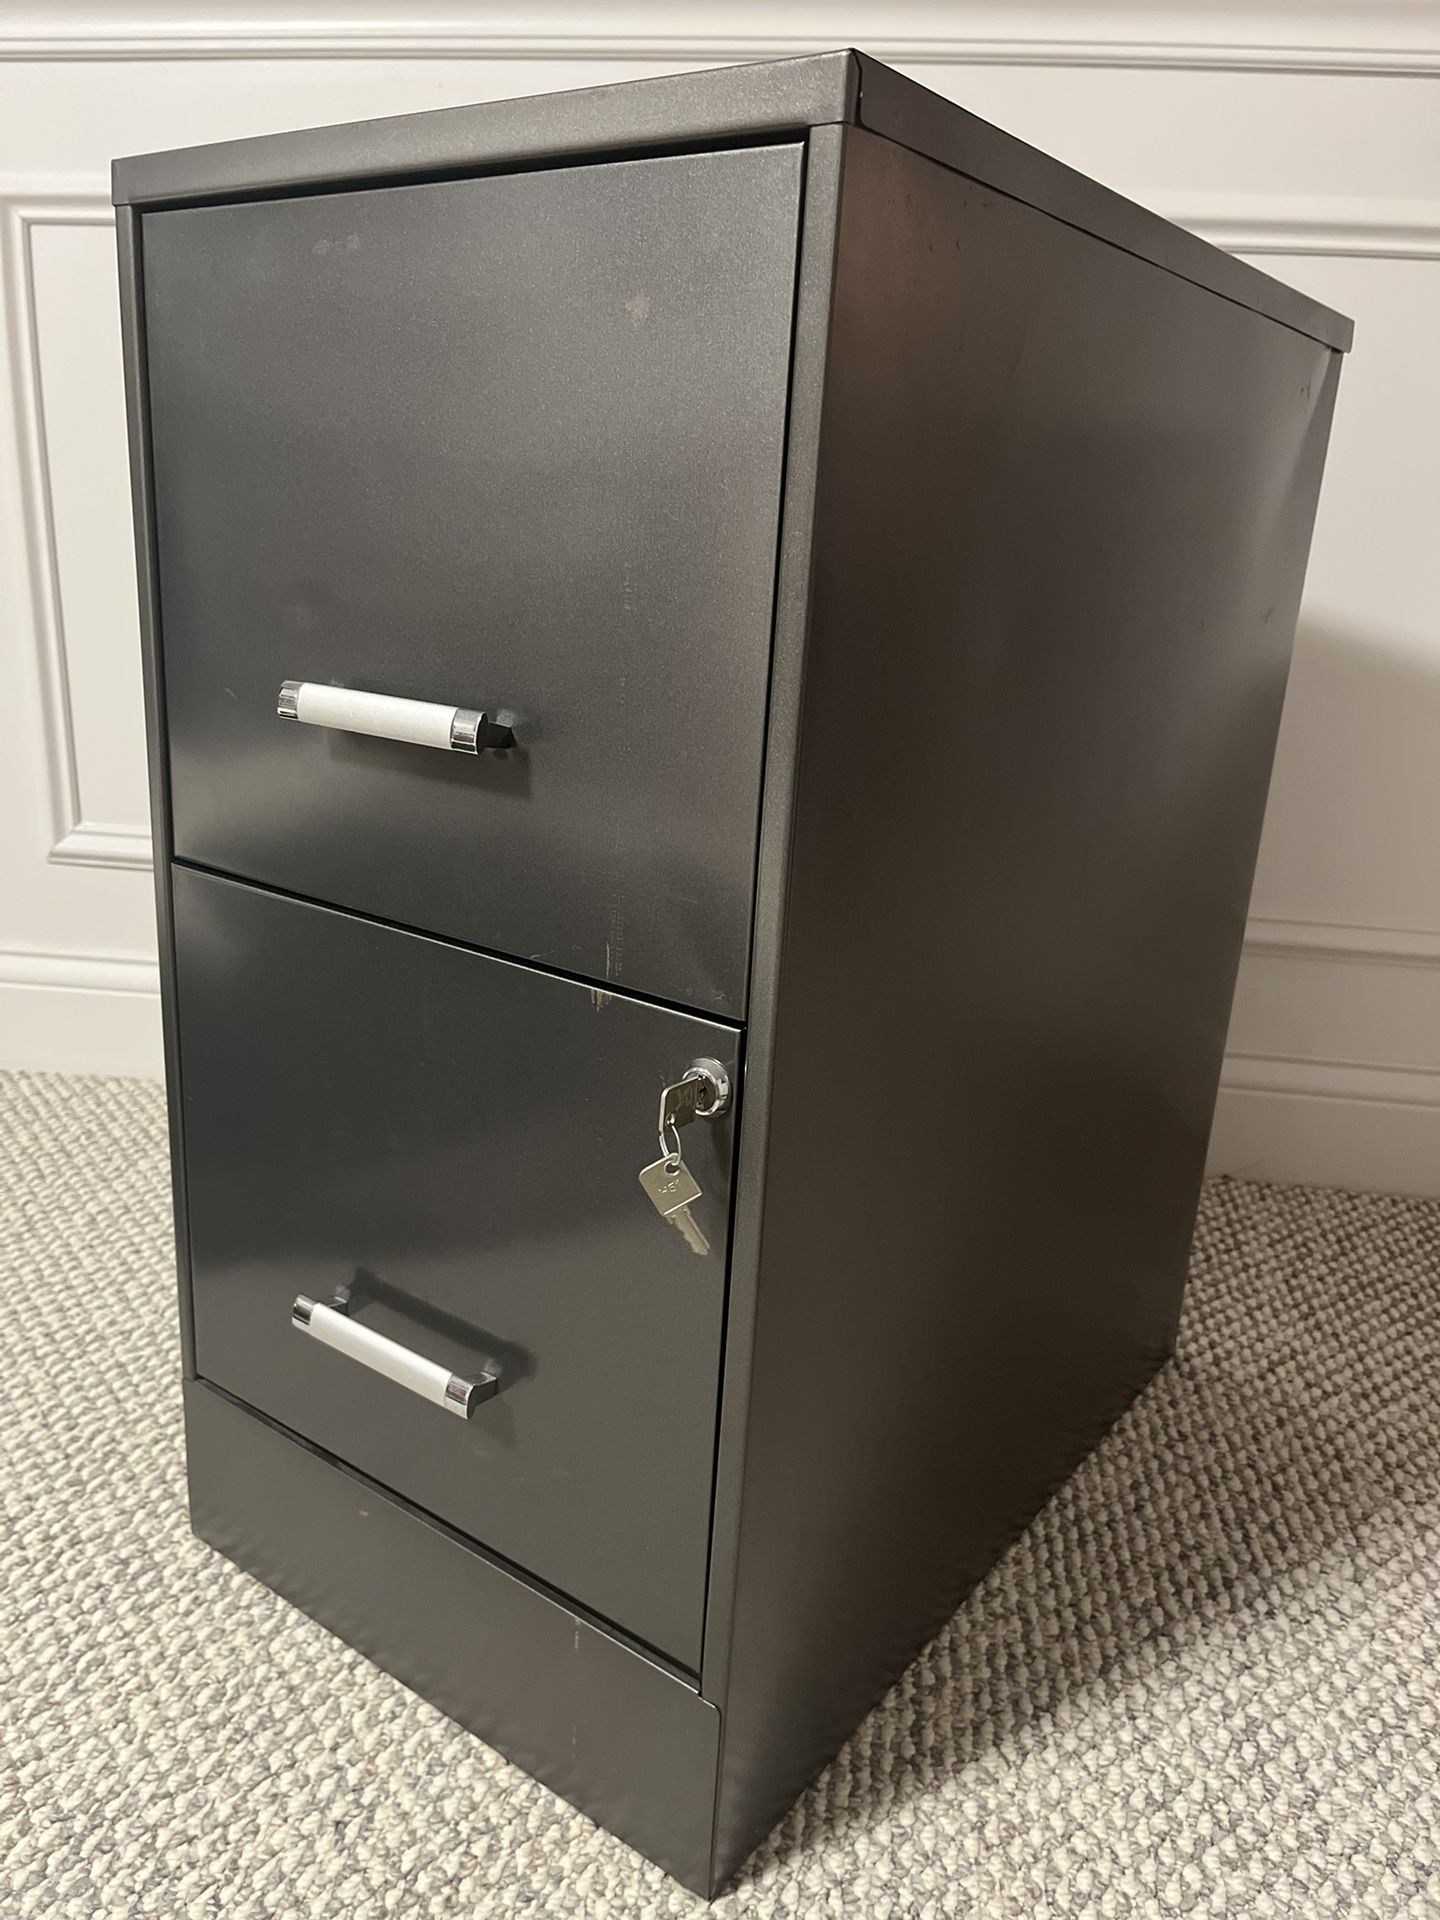 Metal 2-Drawer Filing Cabinet